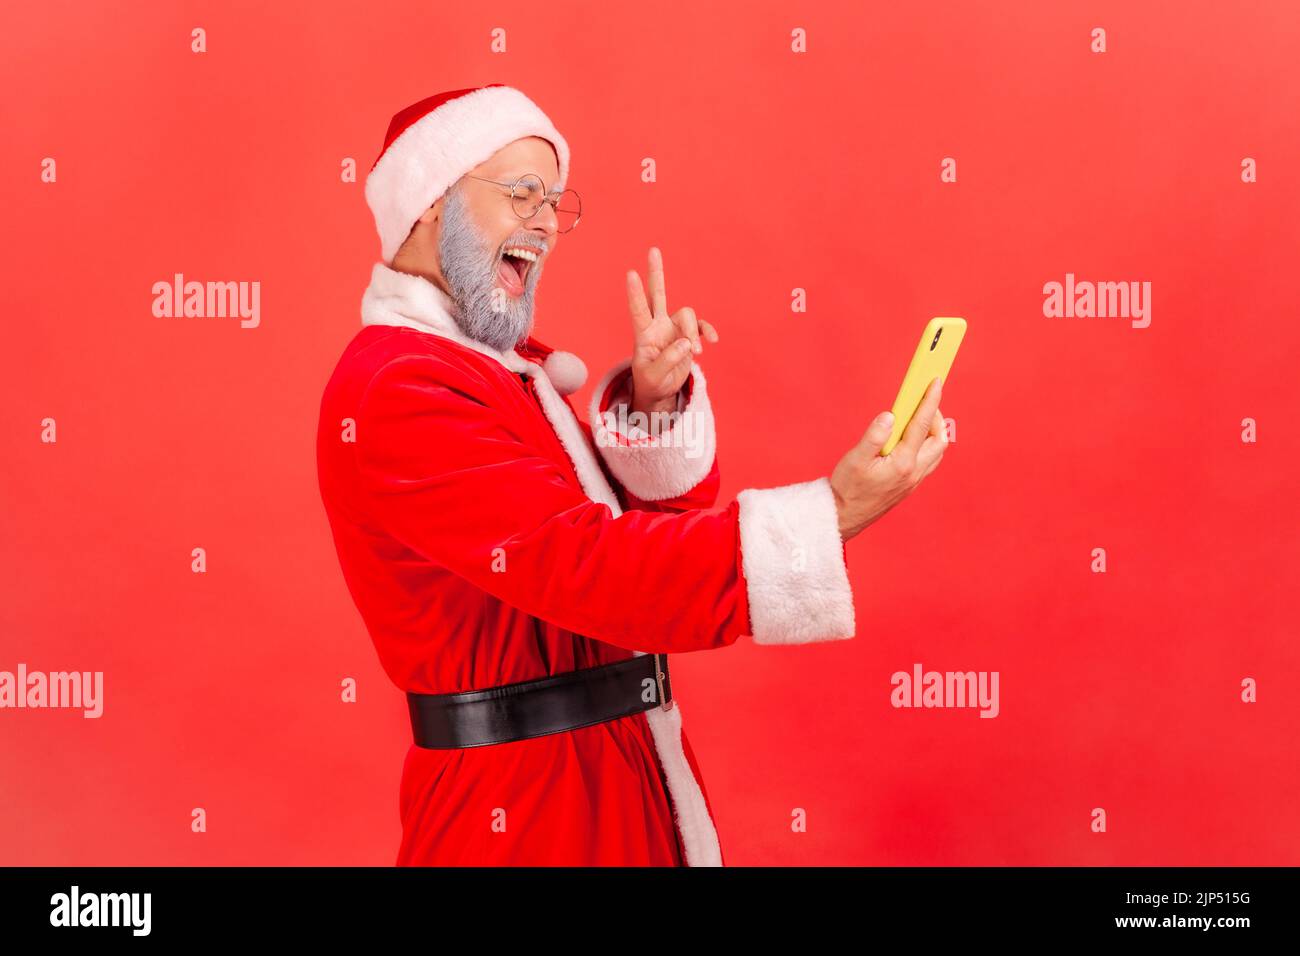 Seitenansicht eines älteren Mannes mit grauem Bart, der das weihnachtsmann-Kostüm trägt und den Livestream überträgt, der Anhänger ein V-Zeichen zeigt, aufgeregt. Innenaufnahme des Studios isoliert auf rotem Hintergrund. Stockfoto